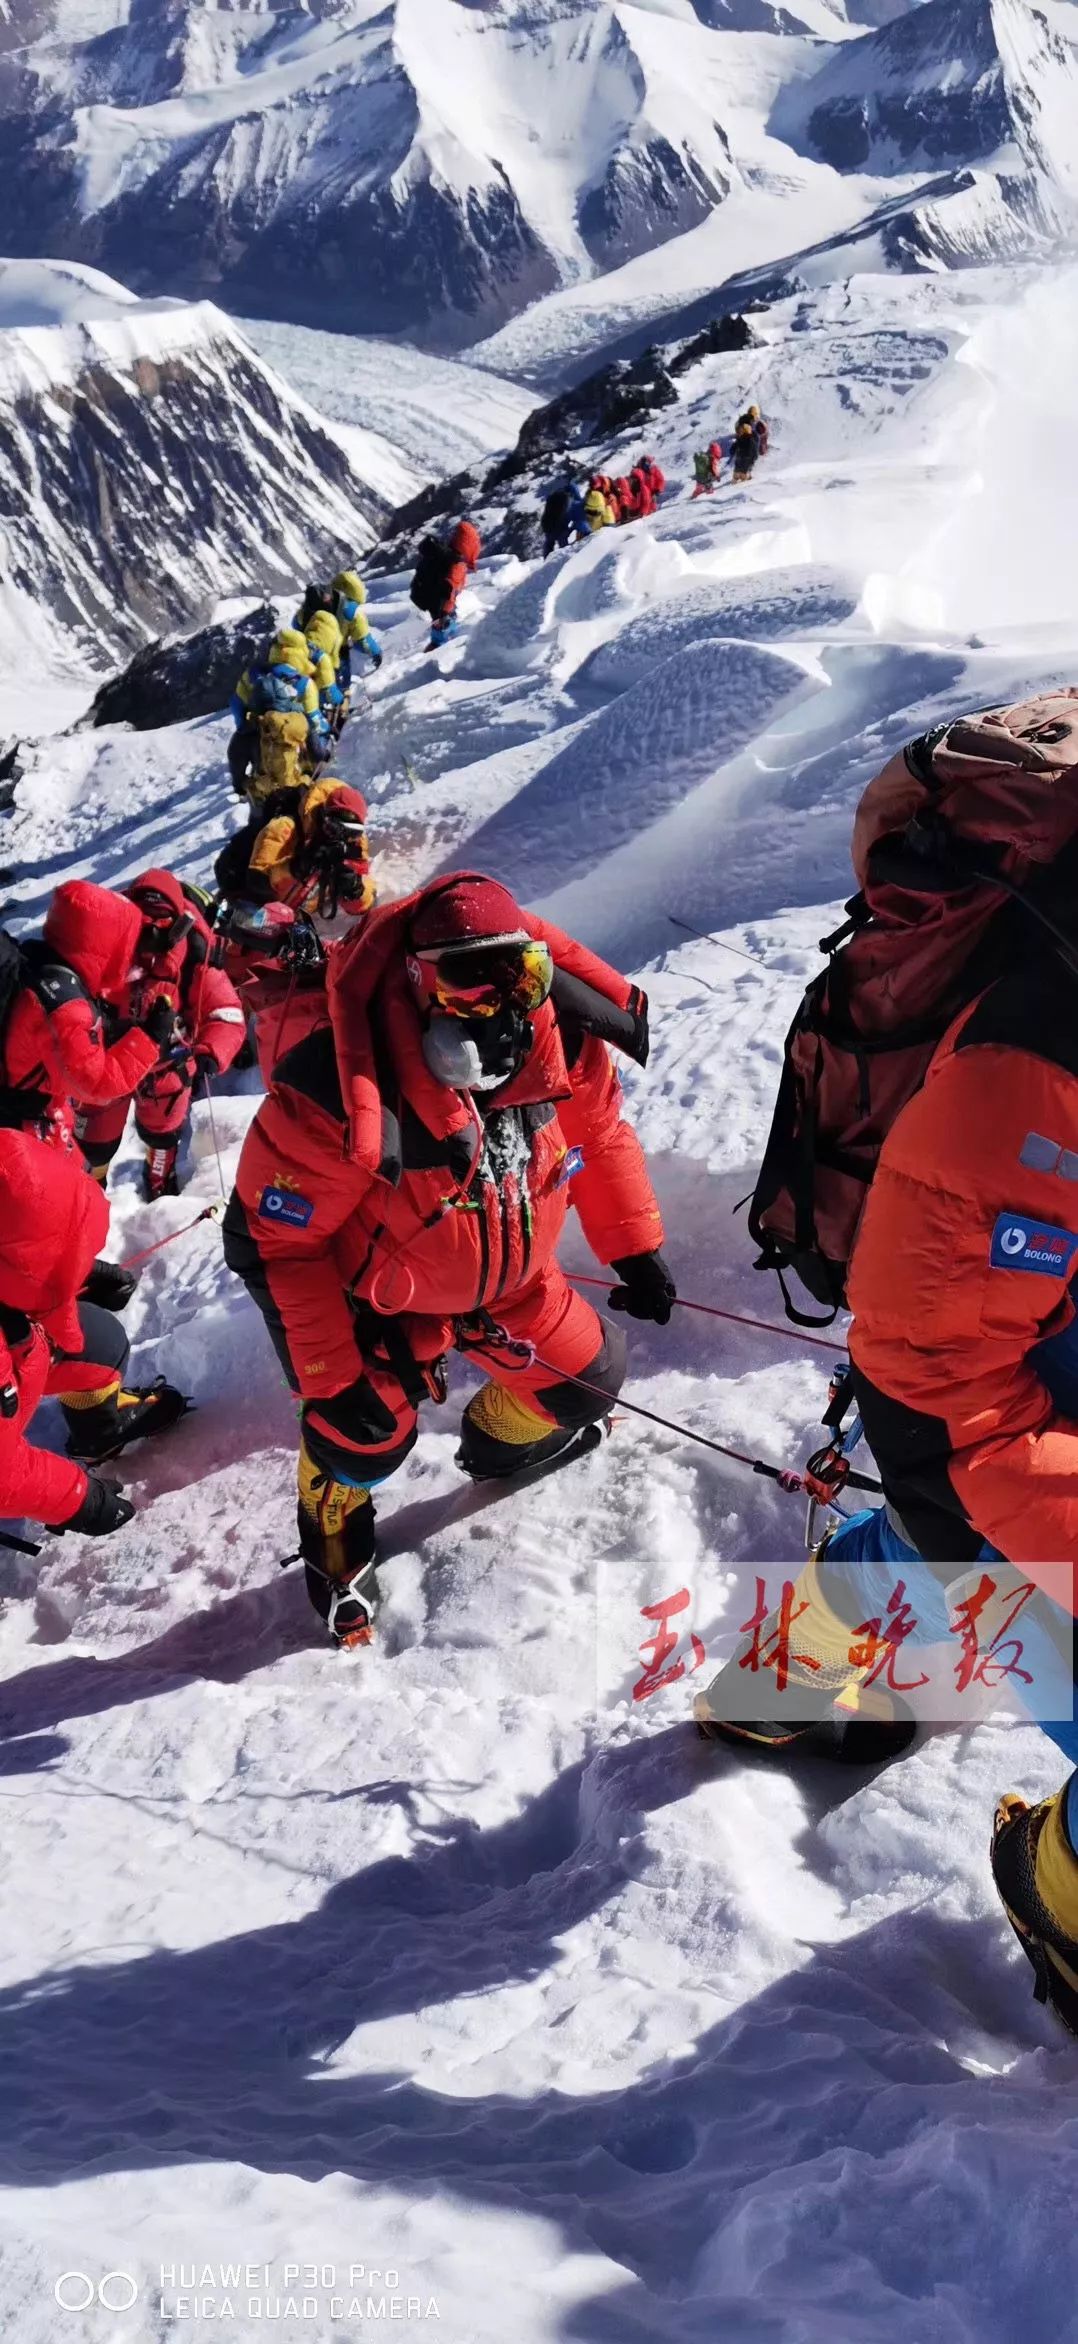 57岁男子成功登顶珠穆朗玛峰,过程很震撼